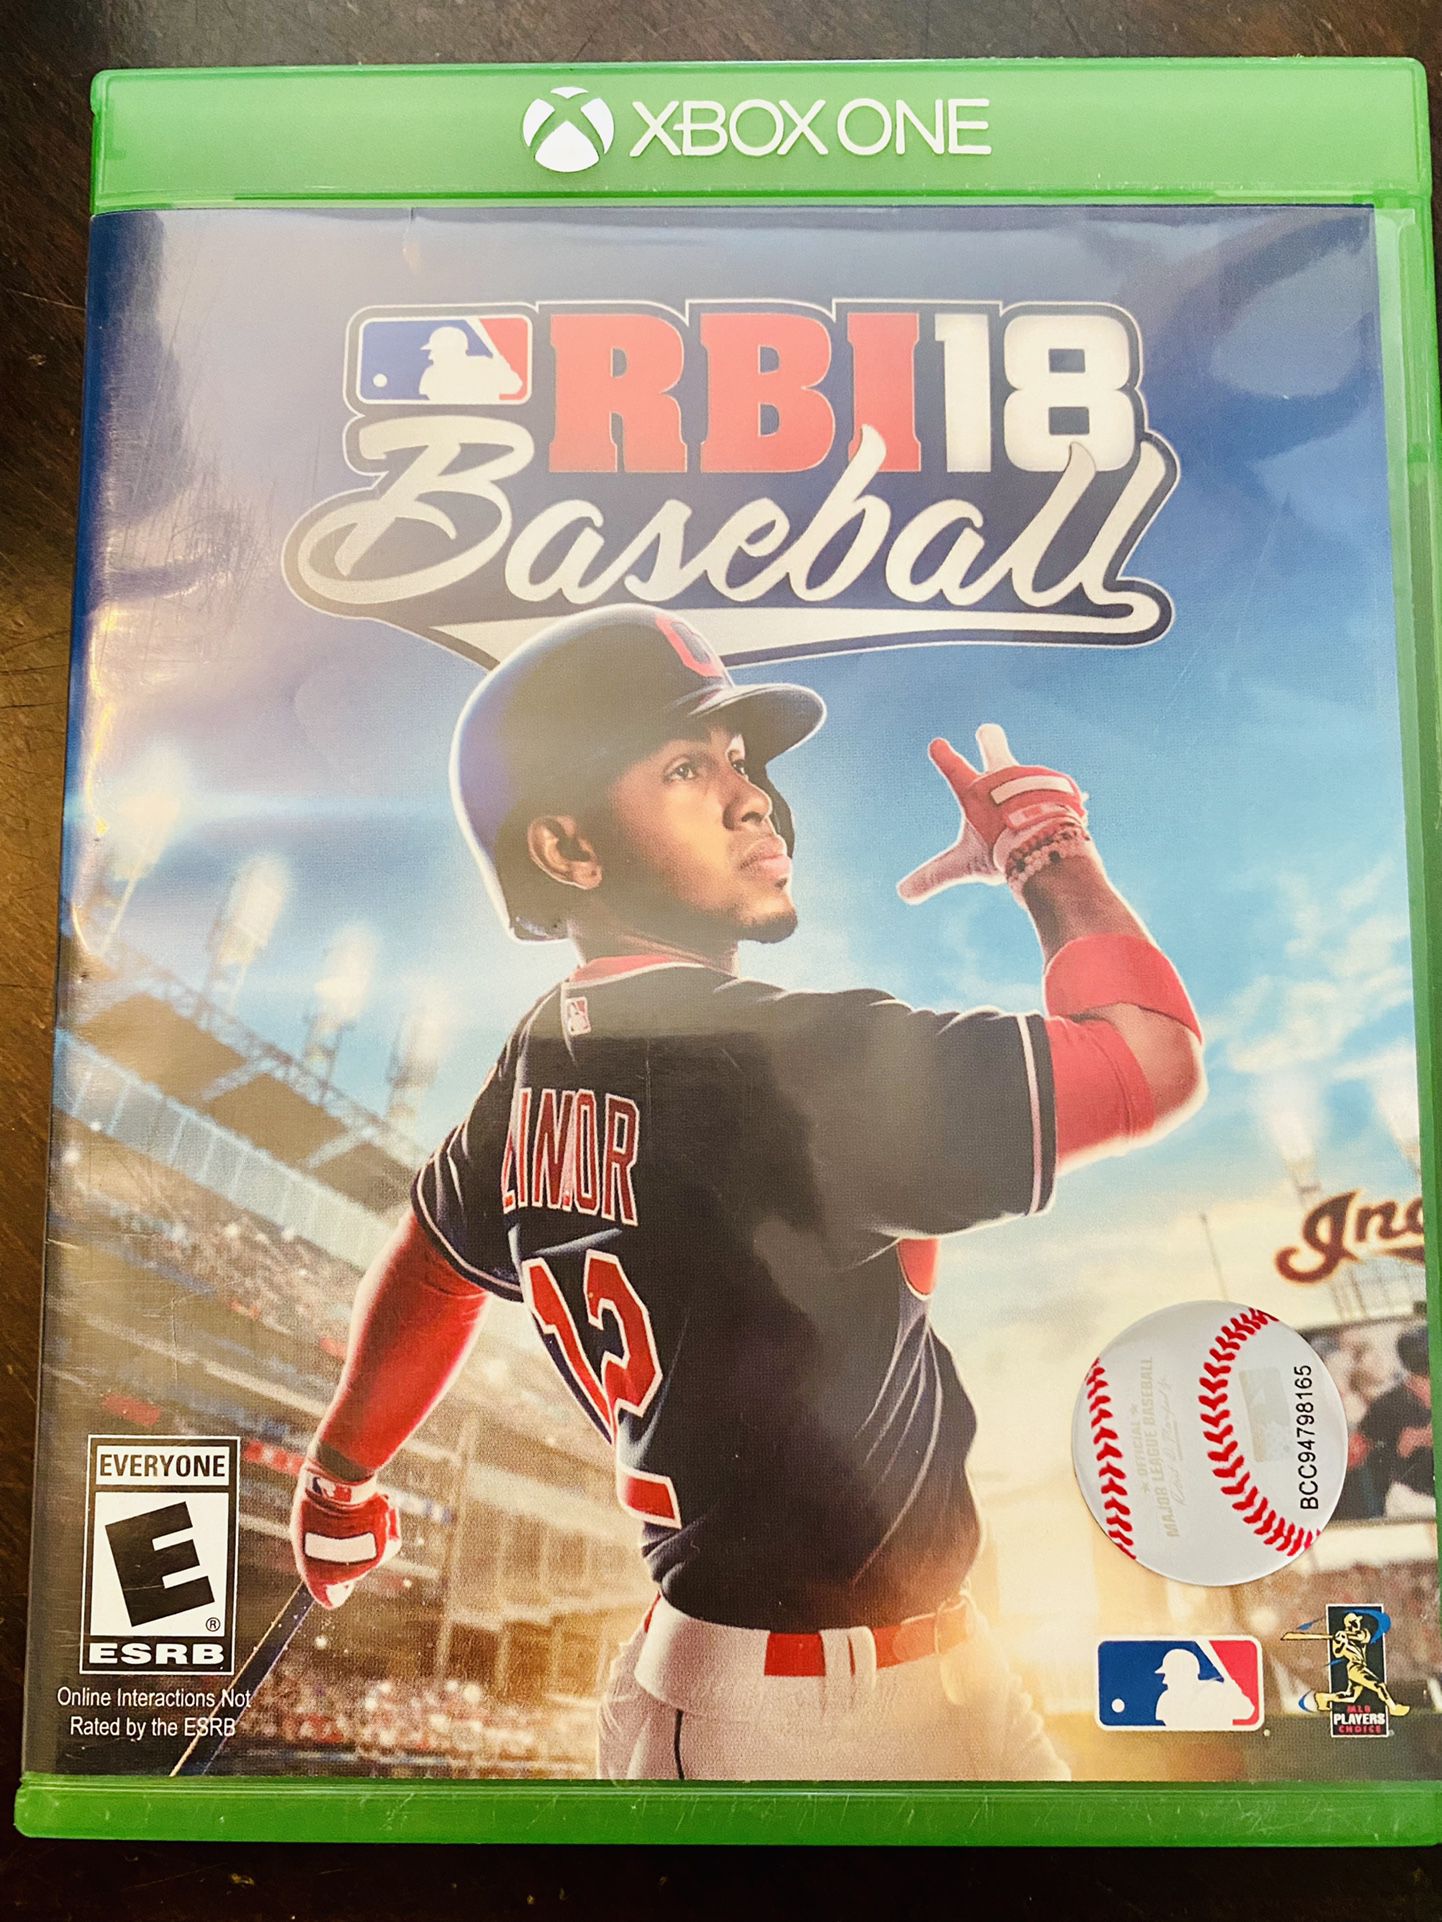 RBI18 Baseball XBOX One 